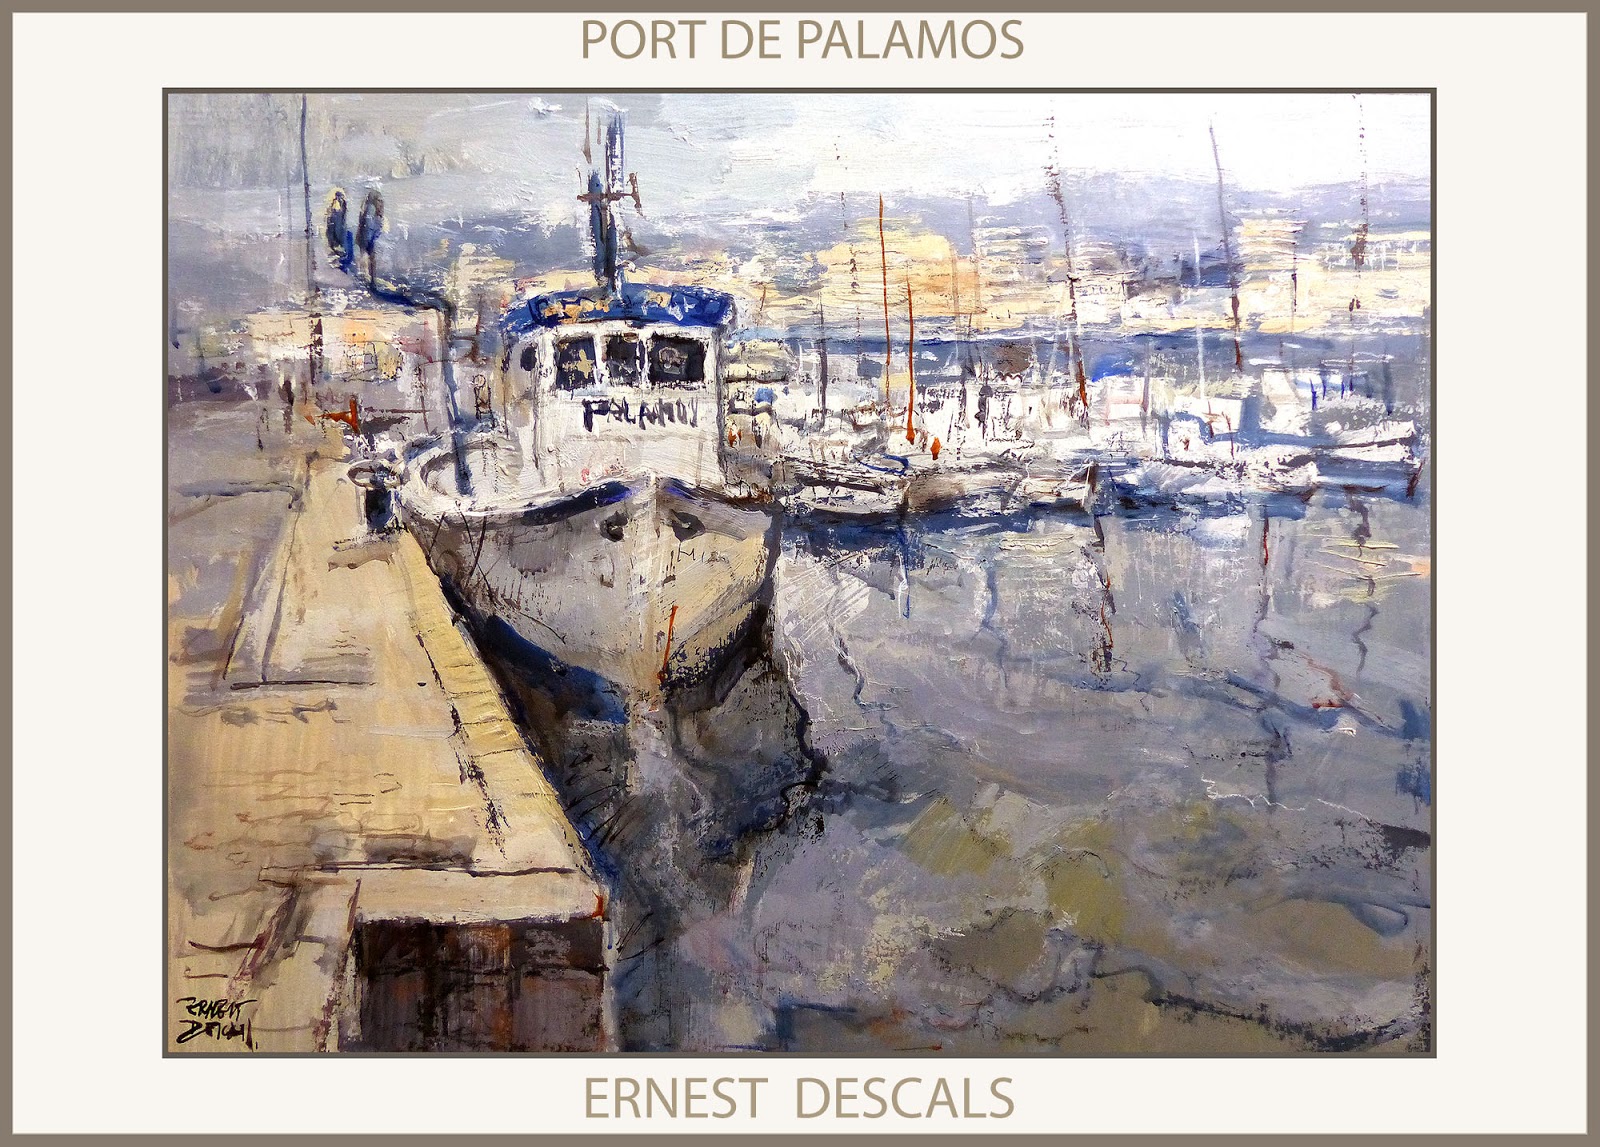 Ernest Descals Artista Pintor Pinturas Marina Palamos Pintura Paisatges Catalunya Platja